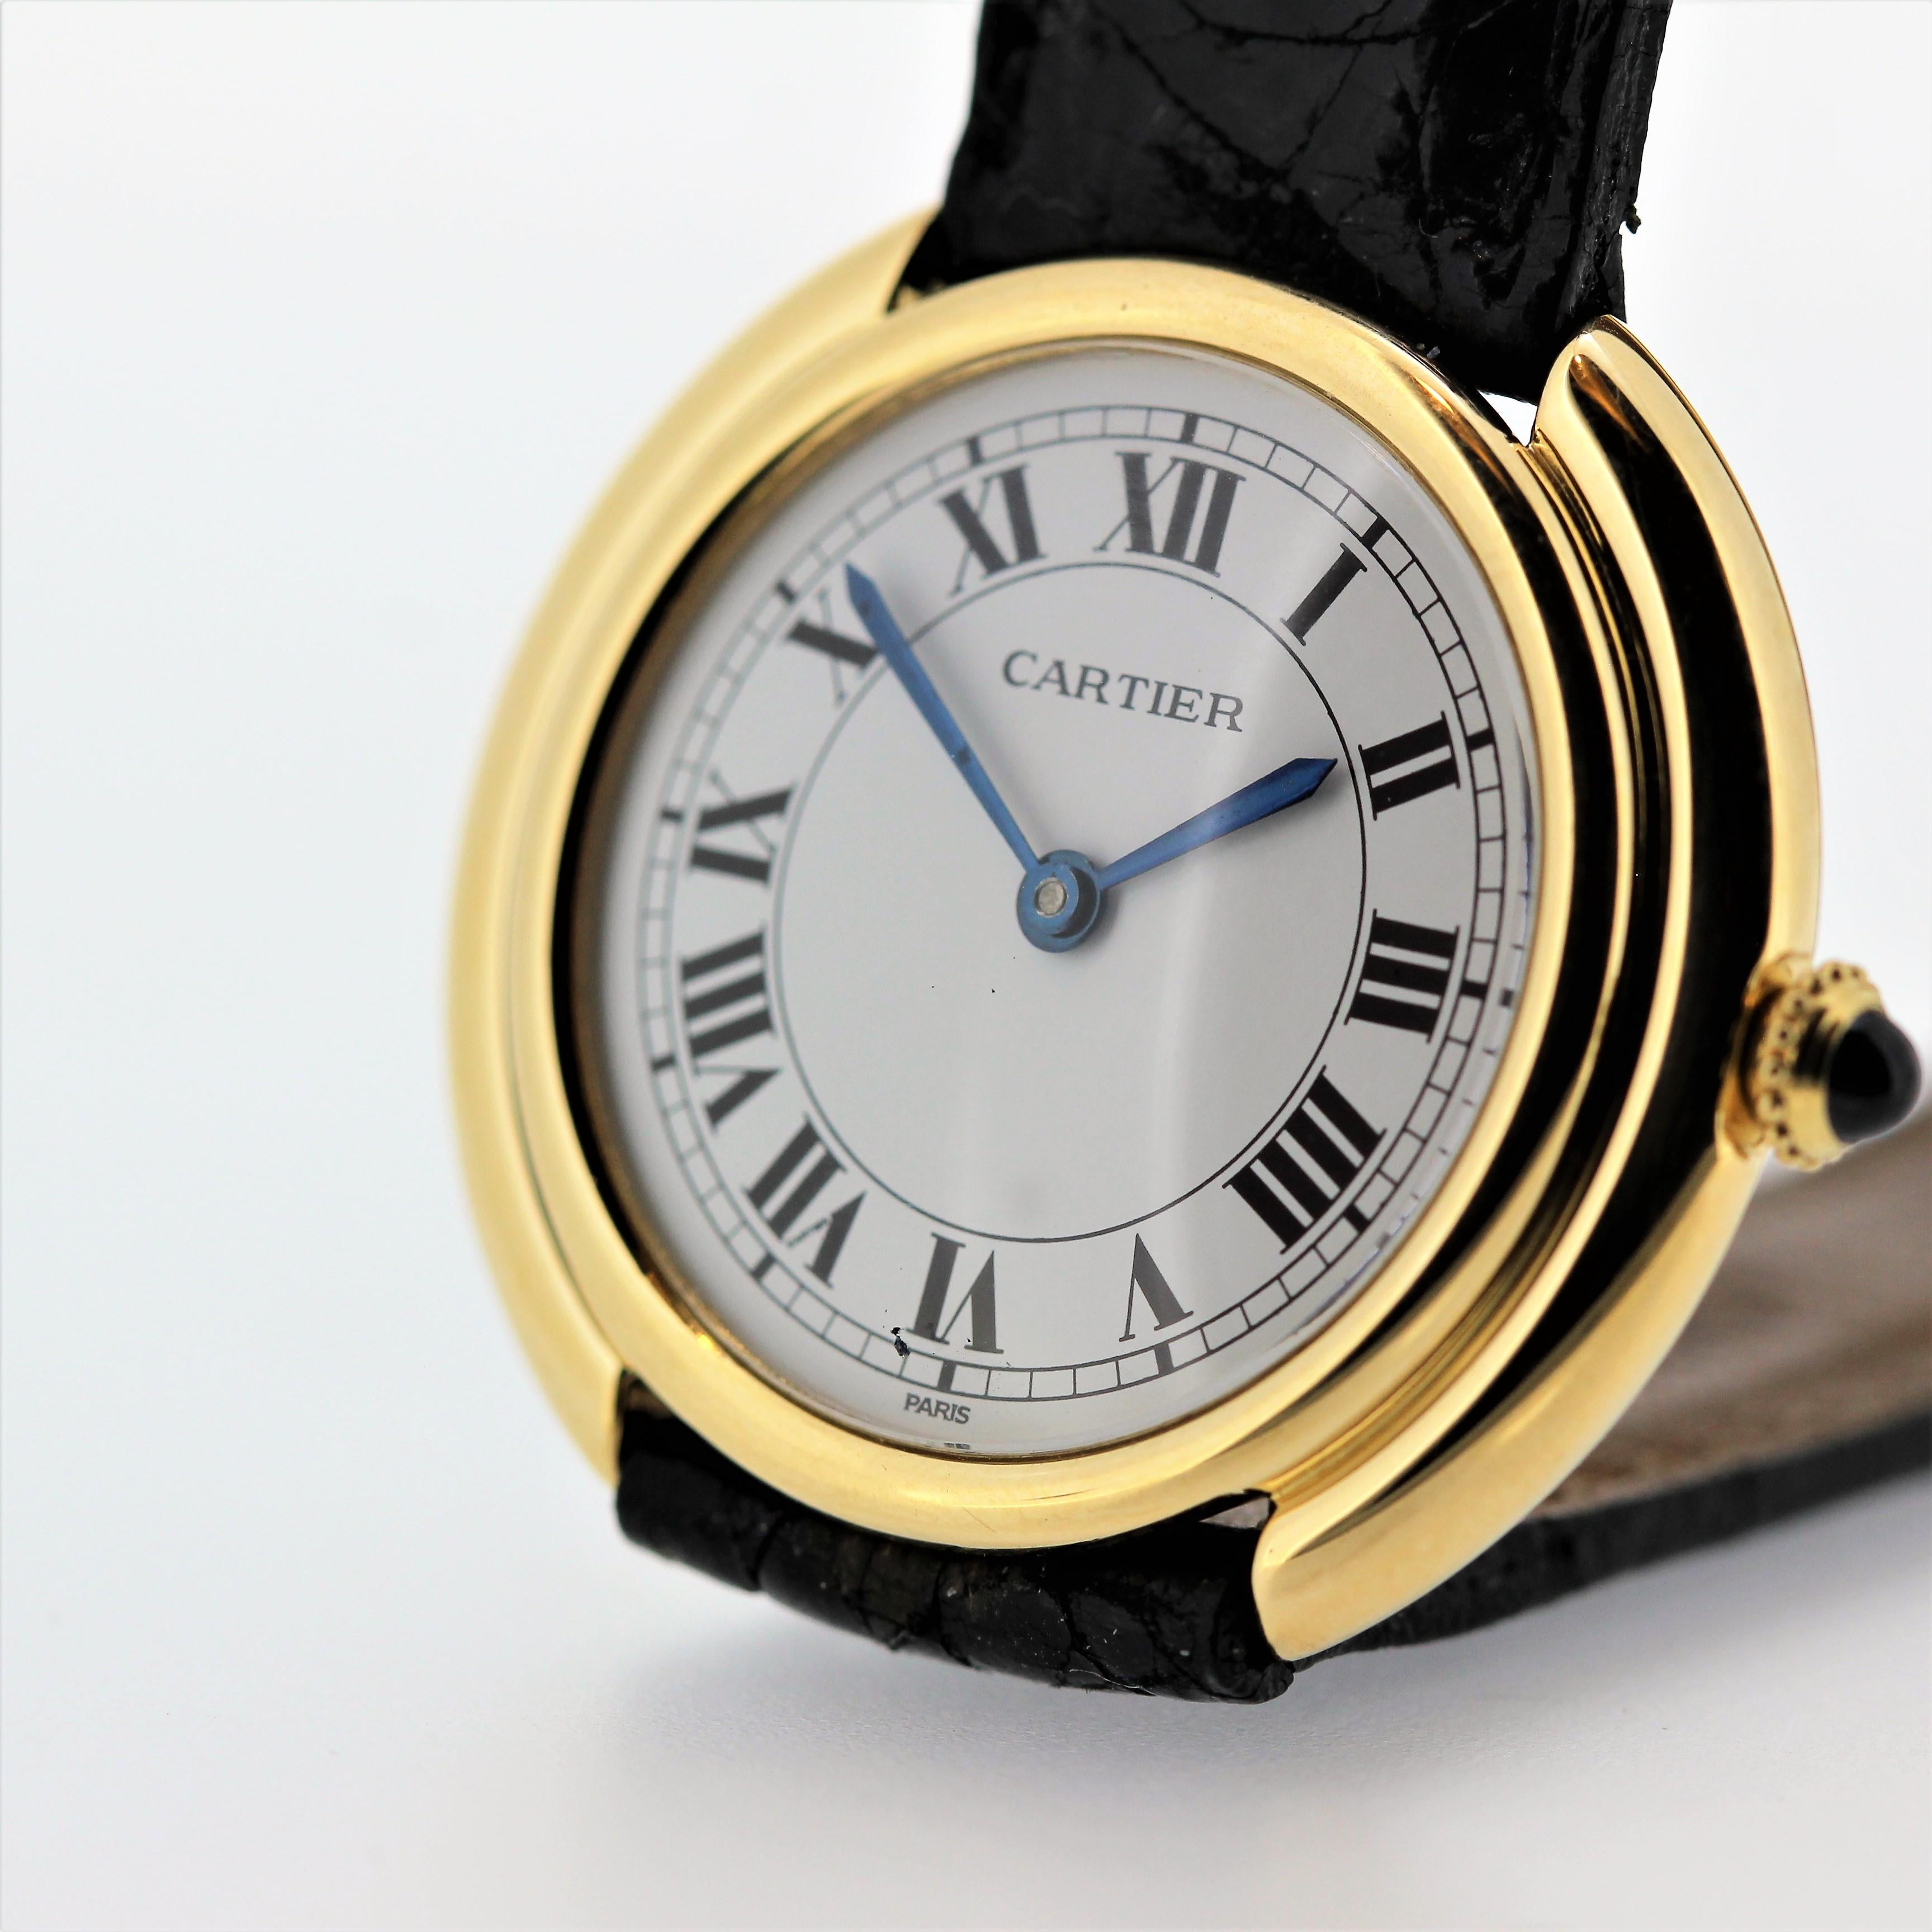 Introduction :
Nous avons 2 exemplaires de cette montre vintage Cartier.  
Cette montre Vintage Cartier Paris Vendome est la petite taille, circa 1975-1980.  Elle est en or jaune 18 carats et mesure 26 mm de diamètre avec un mouvement mécanique à